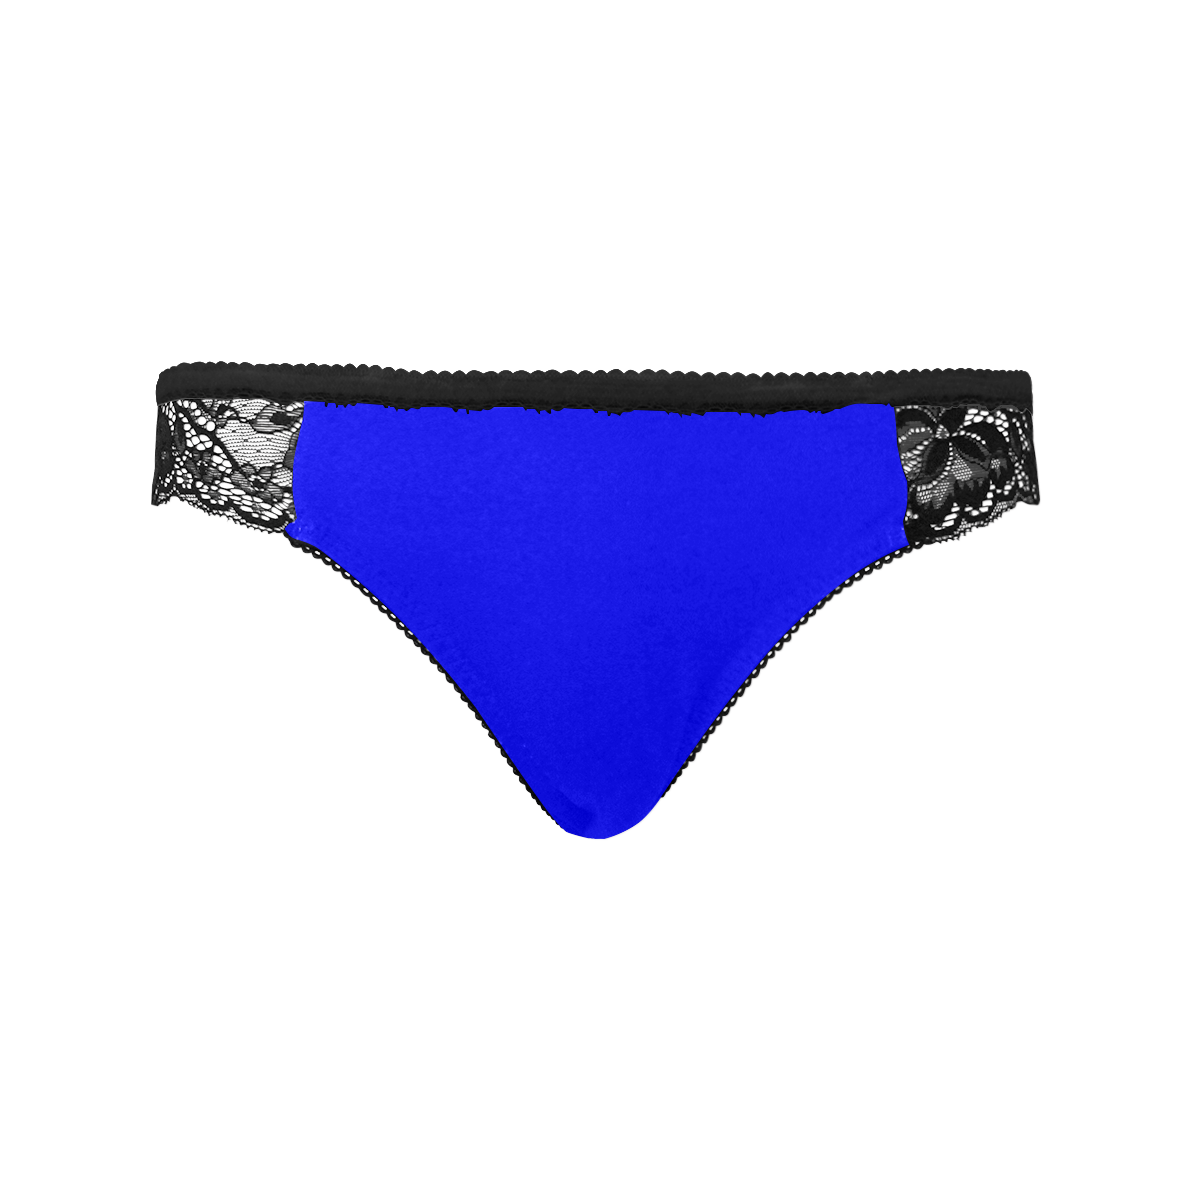 color blue Women's Lace Panty (Model L41)